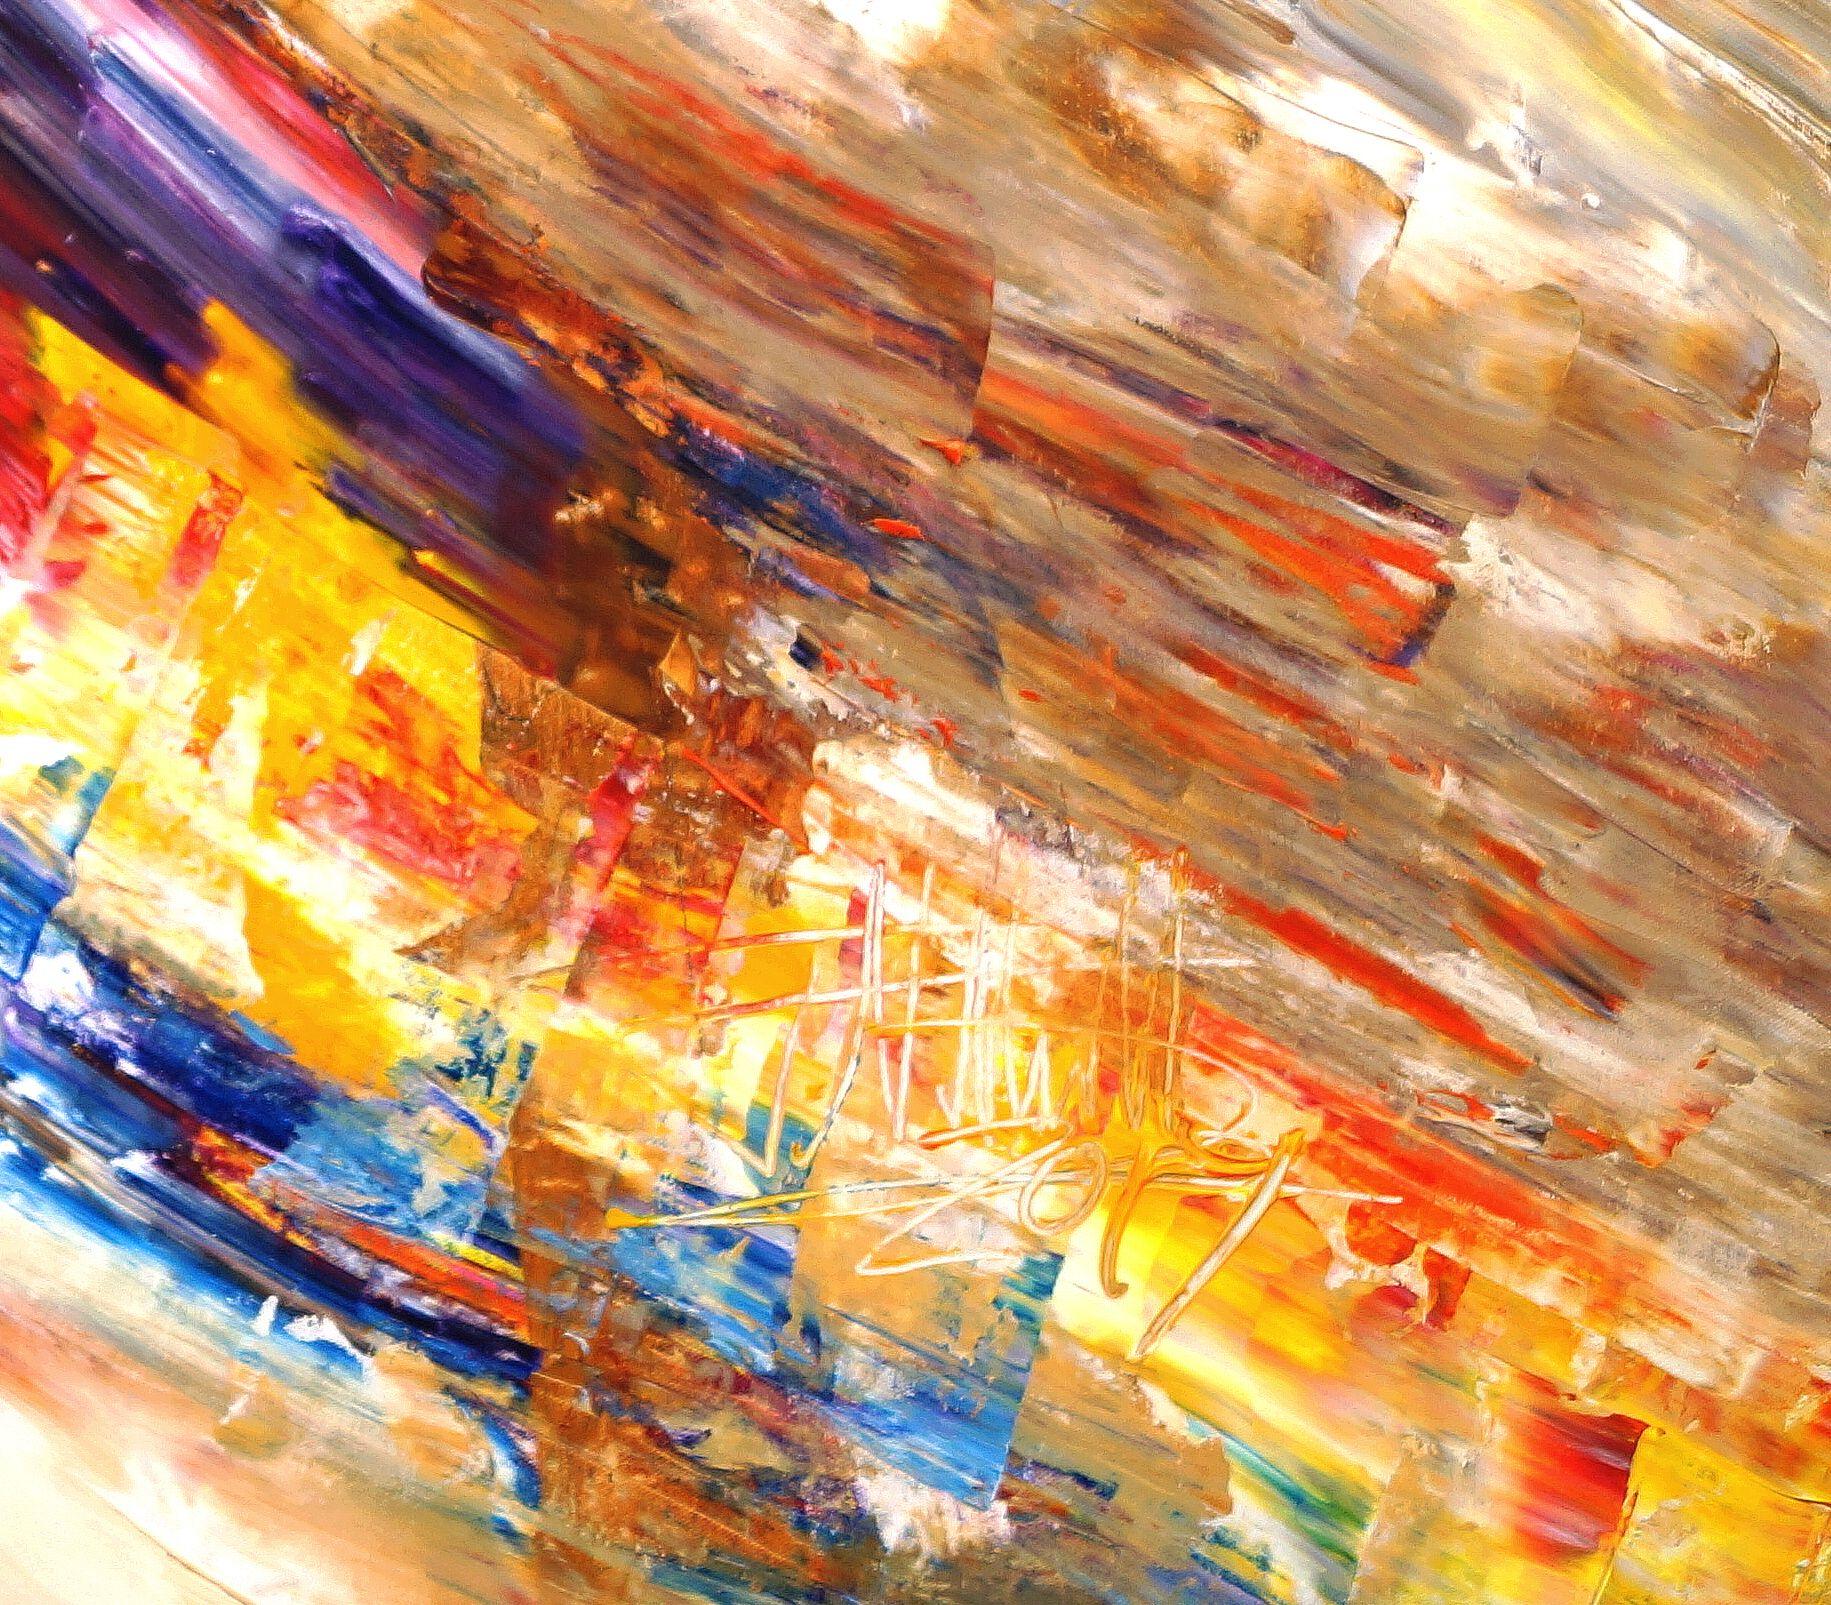 La peinture abstraite comme art contemporain en grand format. Acrylique sur toile, peinture vitale au format XXXL, qui exprime beaucoup de vitalité et de dynamisme. Formation de couleurs attrayantes dans les tons rouge, orange, magenta, rose, bleu,